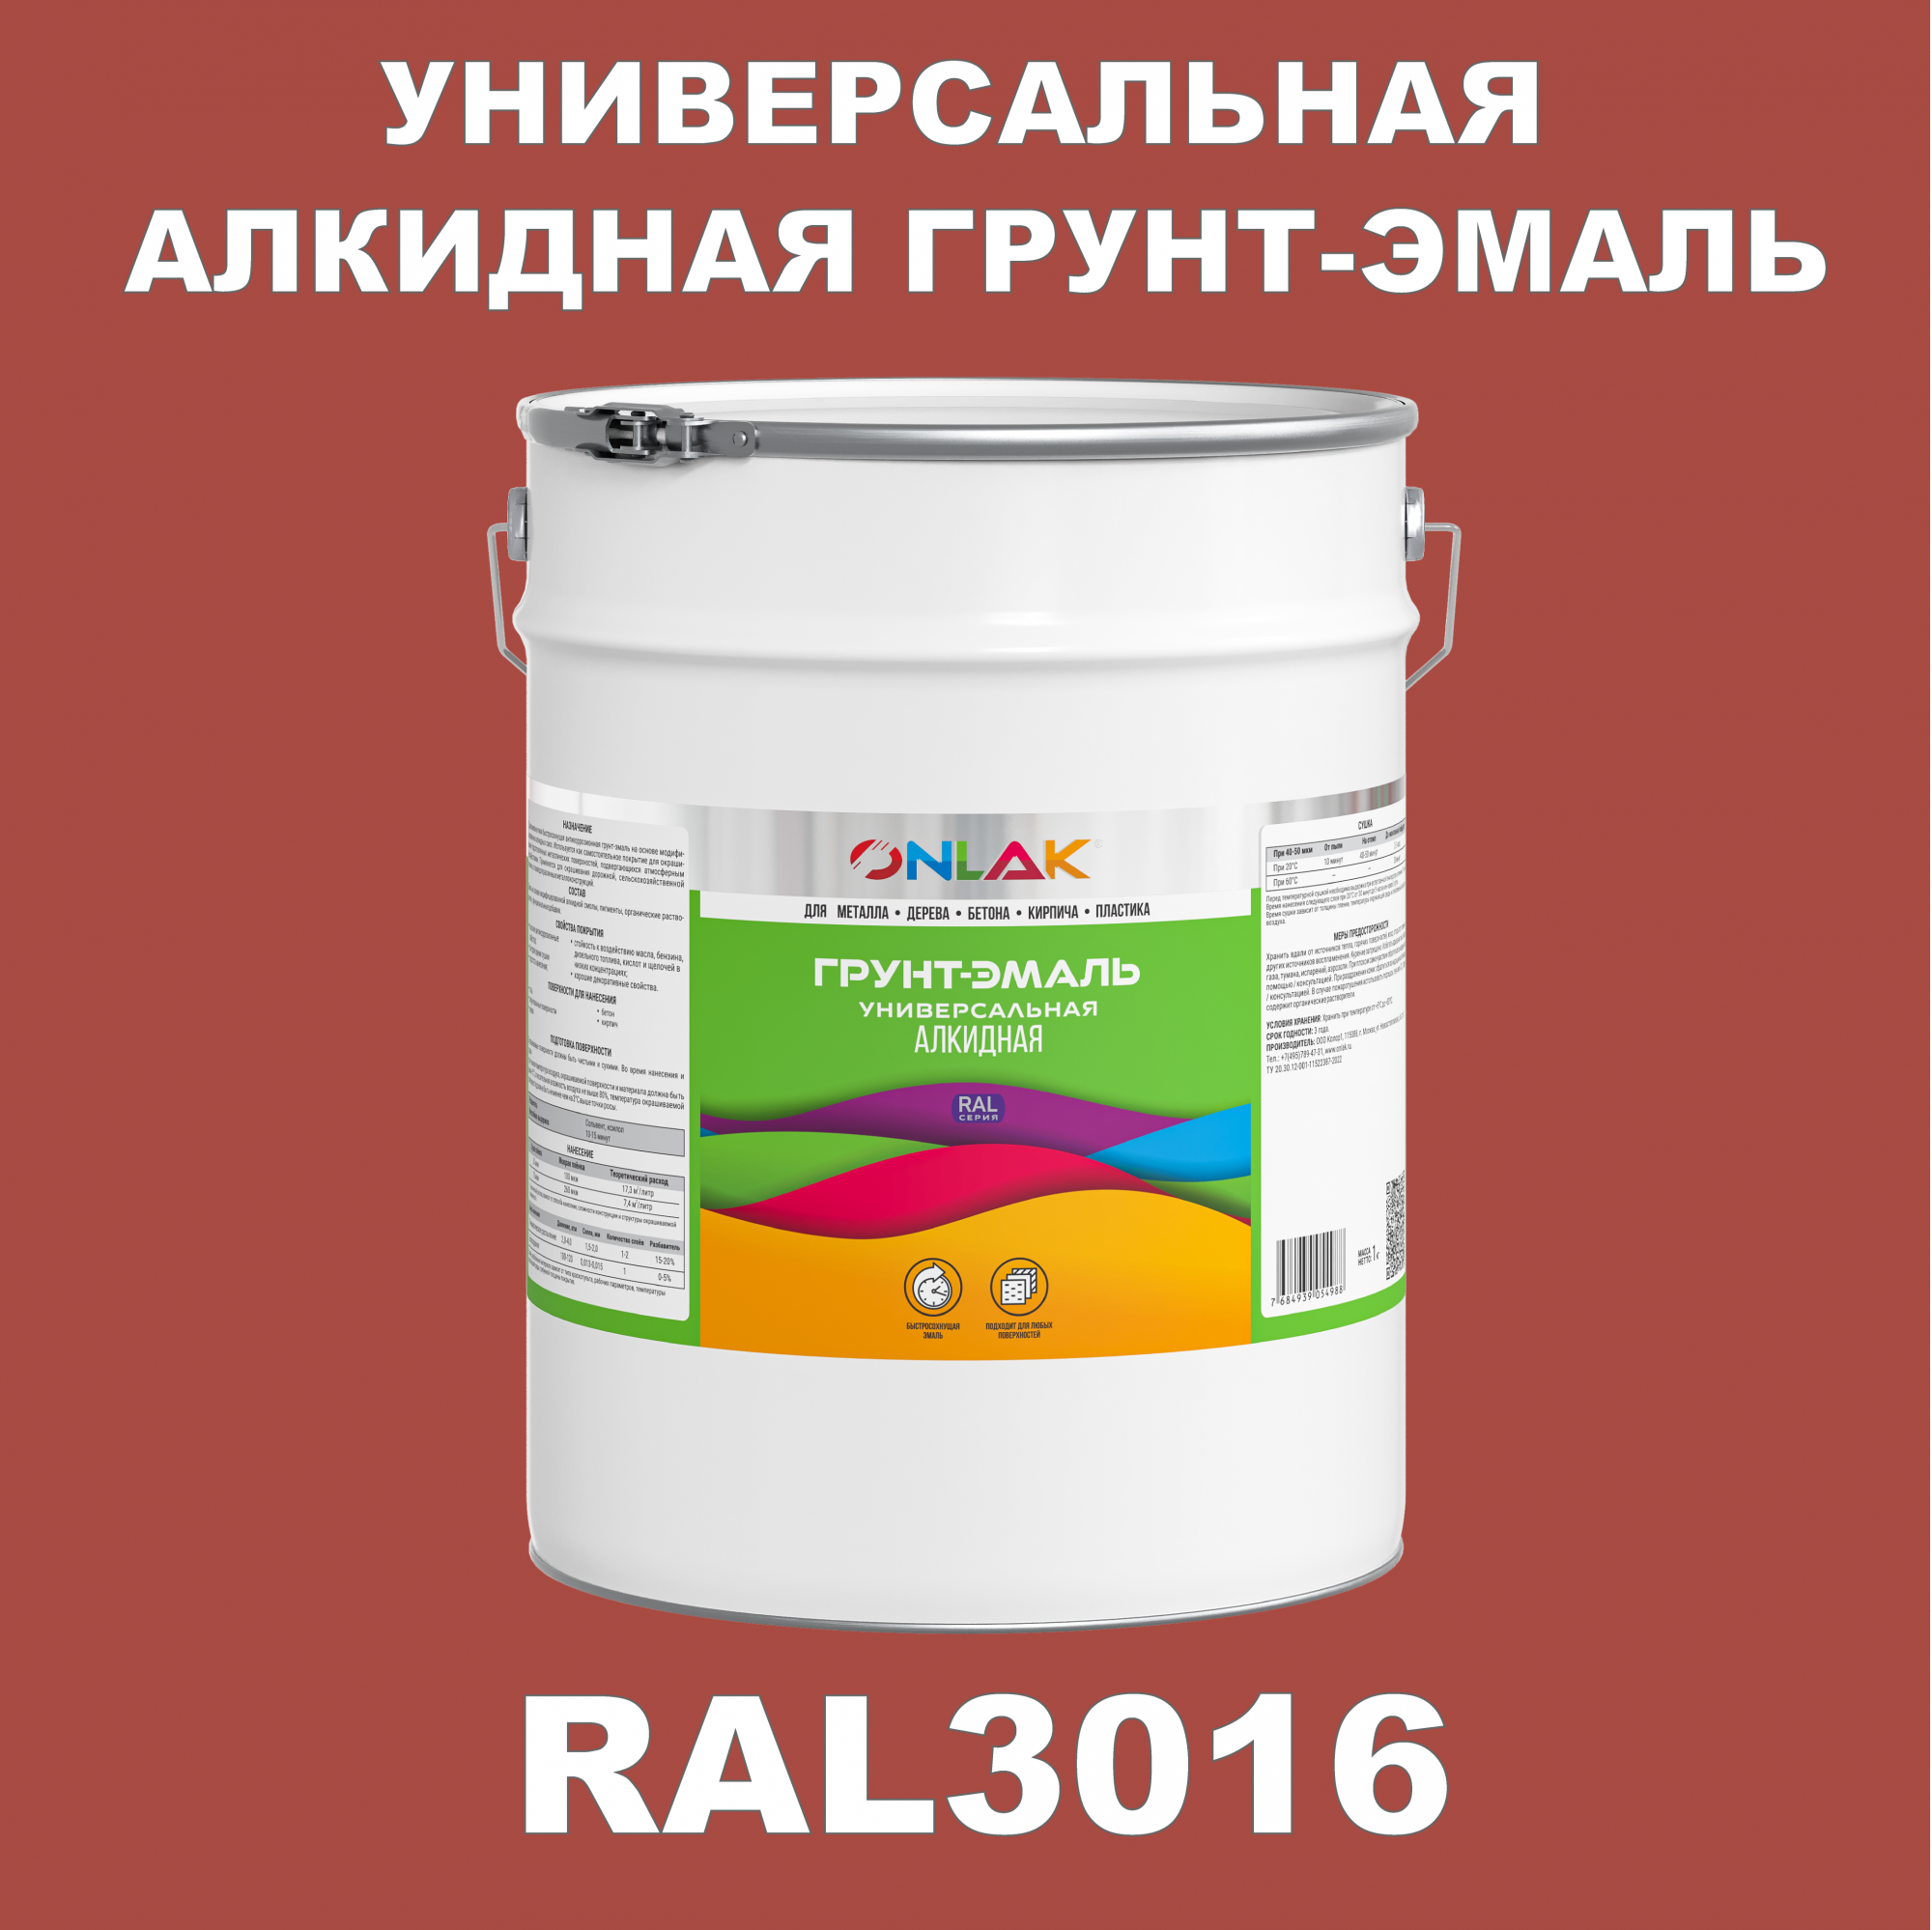 Грунт-эмаль ONLAK 1К RAL3016 антикоррозионная алкидная по металлу по ржавчине 20 кг грунт для масла mighty oak